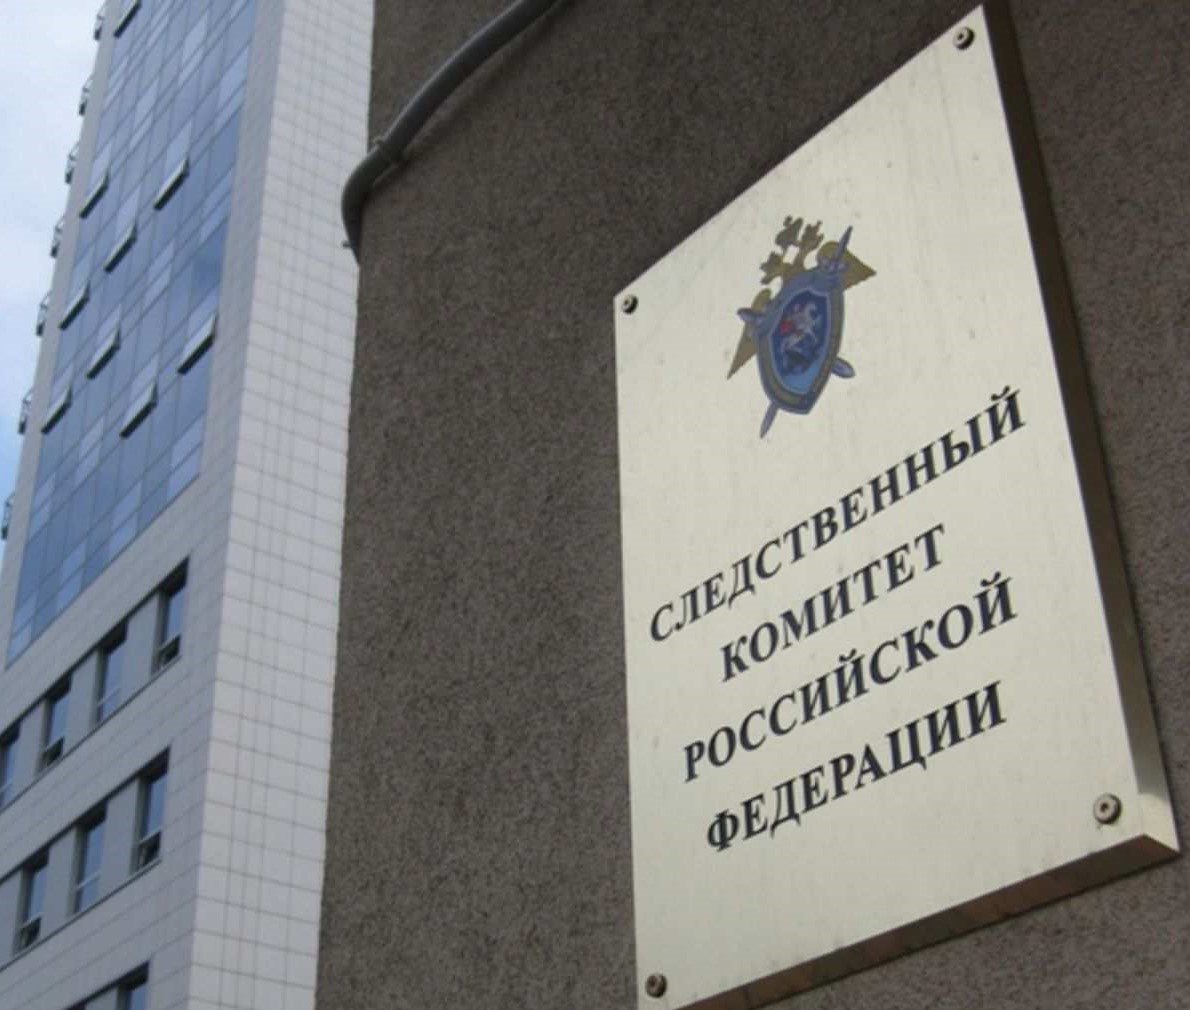 Следственный комитет России назвал Челябинскую область самым коррумпированным регионом